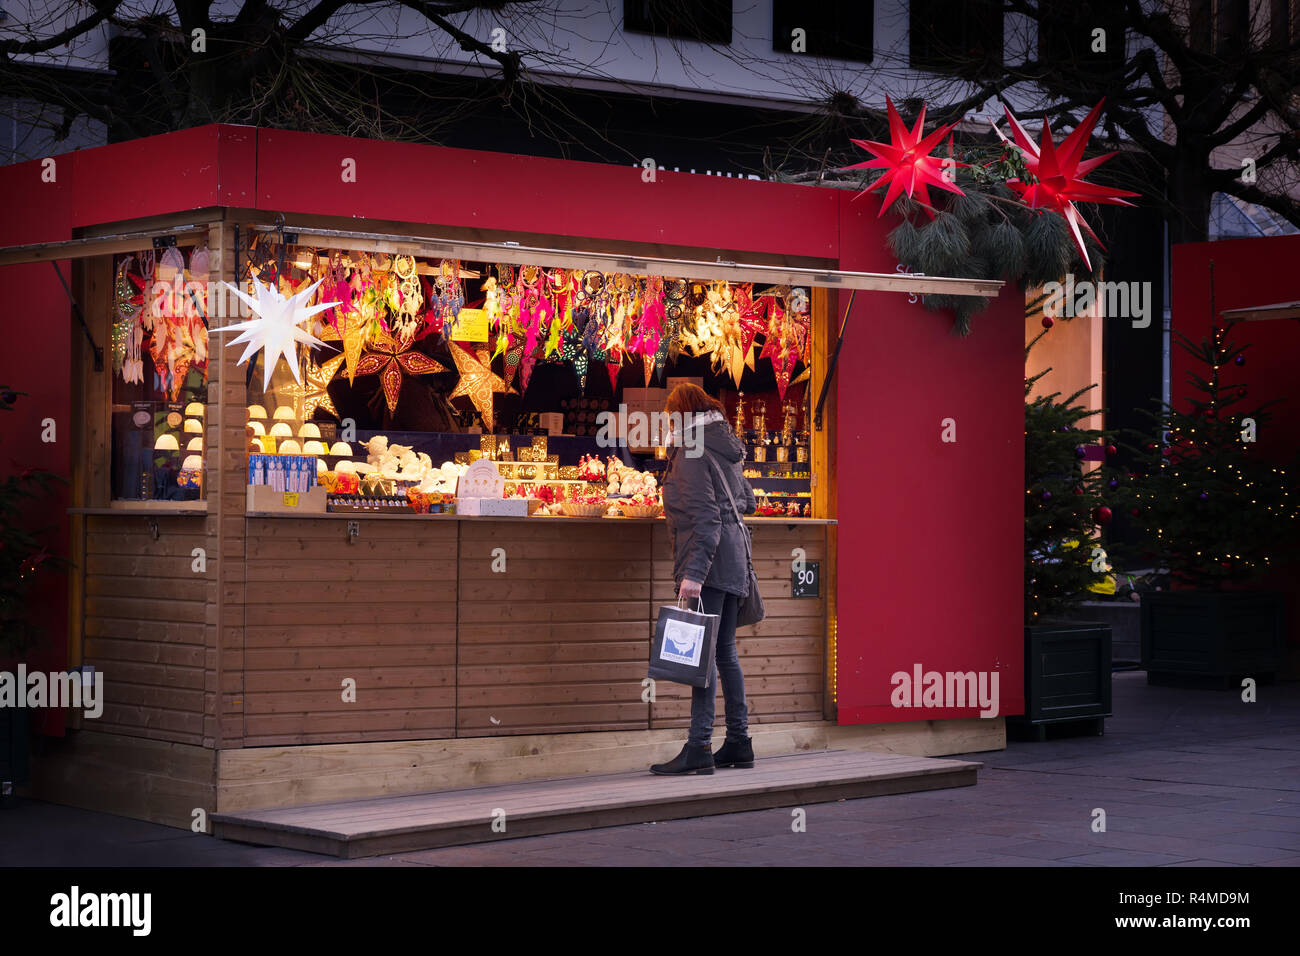 Lübeck, Deutschland - 26 November, 2018: Frau steht vor einem Verkaufsstand  auf dem Weihnachtsmarkt Geschenke zu kaufen oder die Beleuchtung Dekoration  Stockfotografie - Alamy